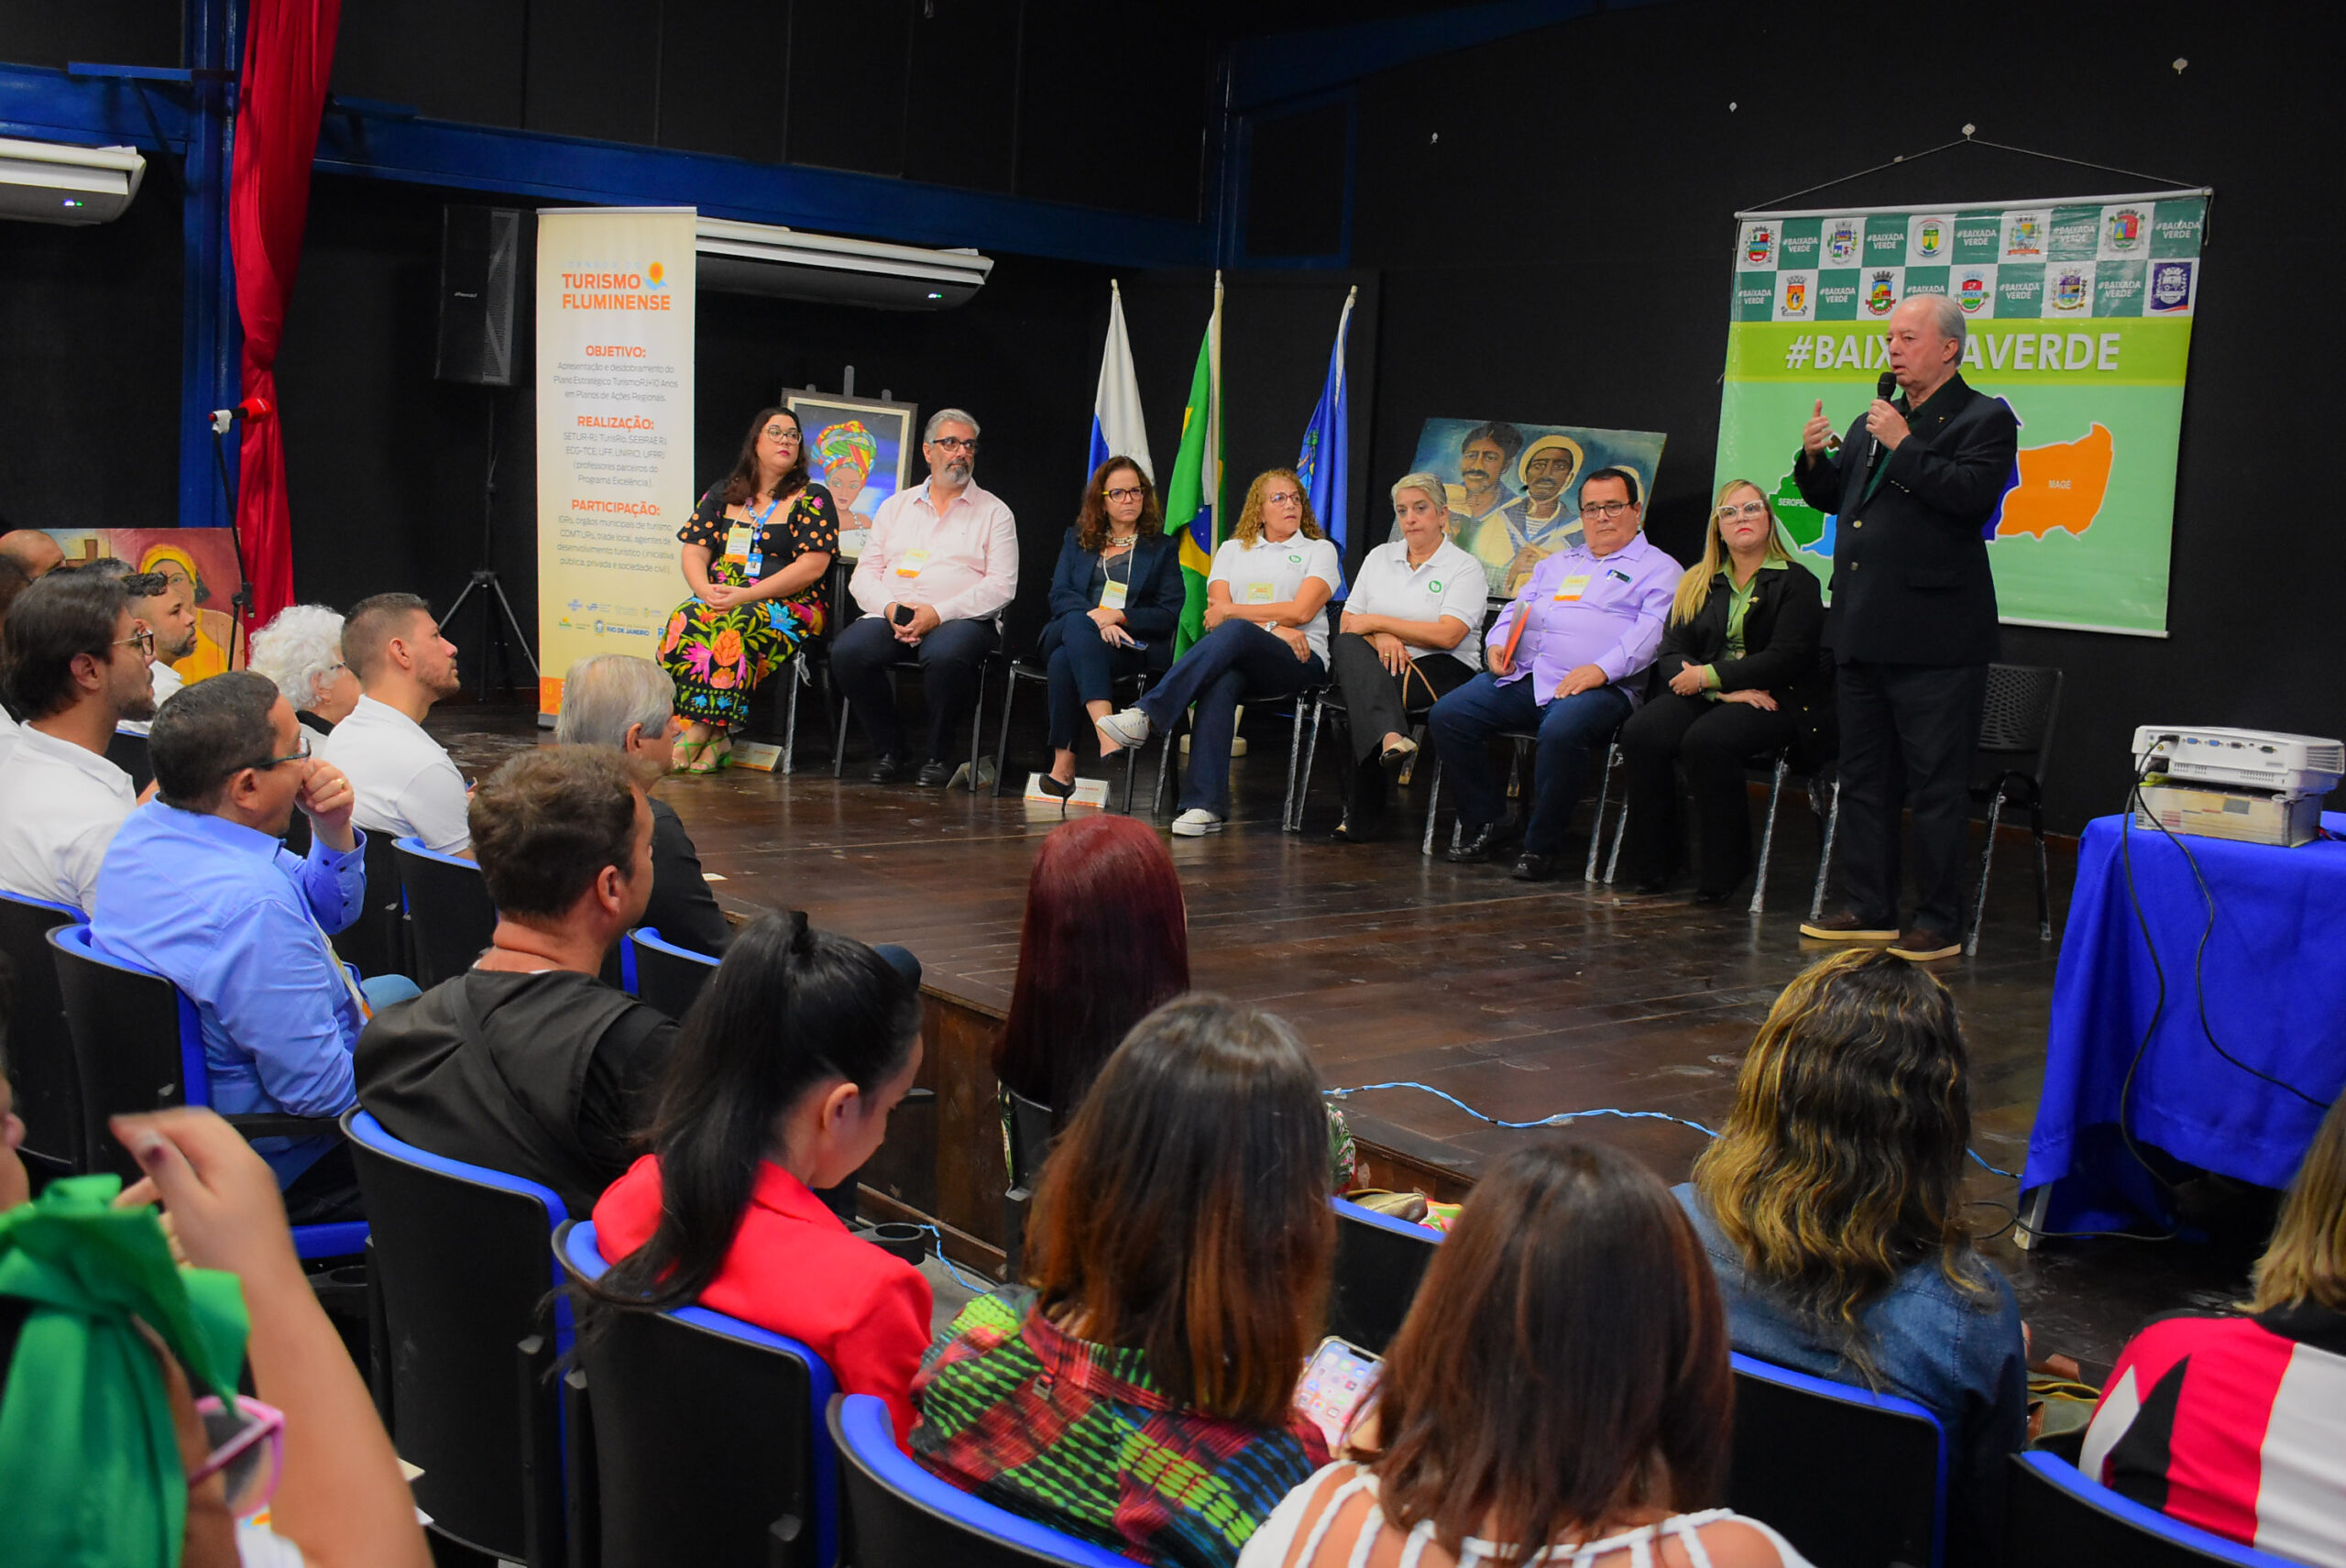 Jornada do Turismo Fluminense promove debate entre lideranças na Baixada Verde